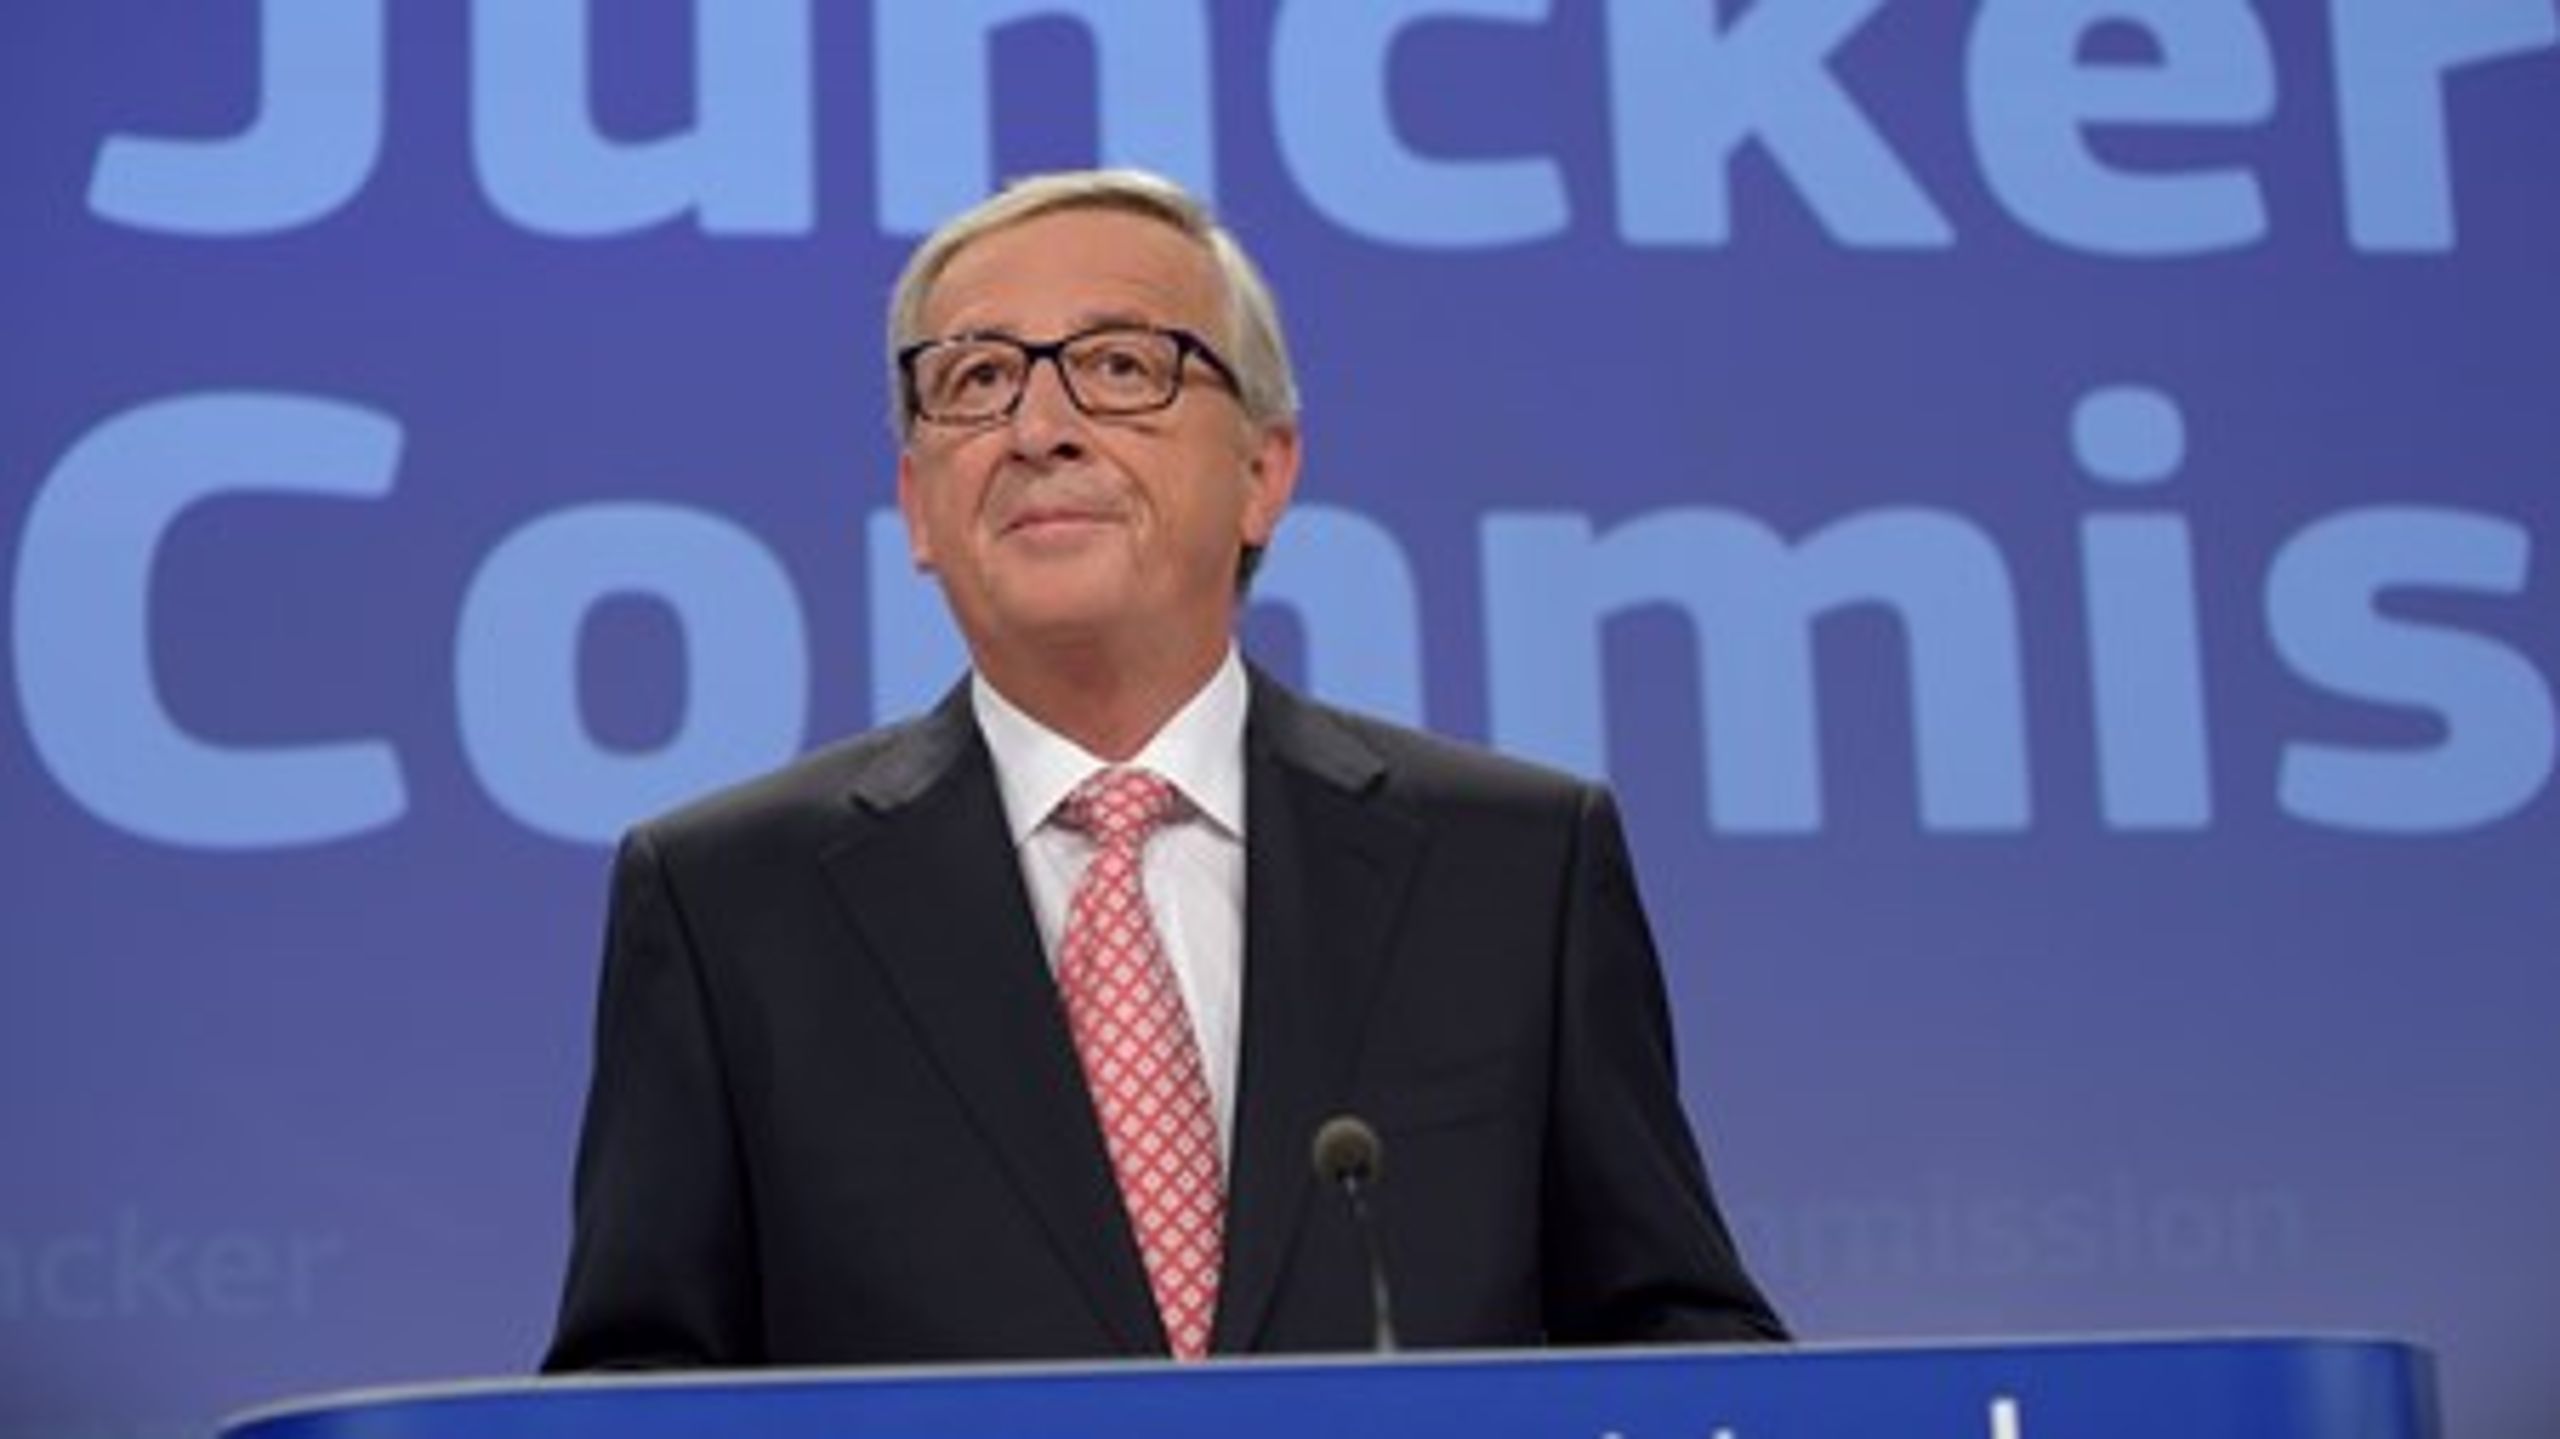 Den kommende EU-kommissionsformand, Jean-Claude Juncker, ønsker en "superkommissær" til at styre EU's grønne politik.